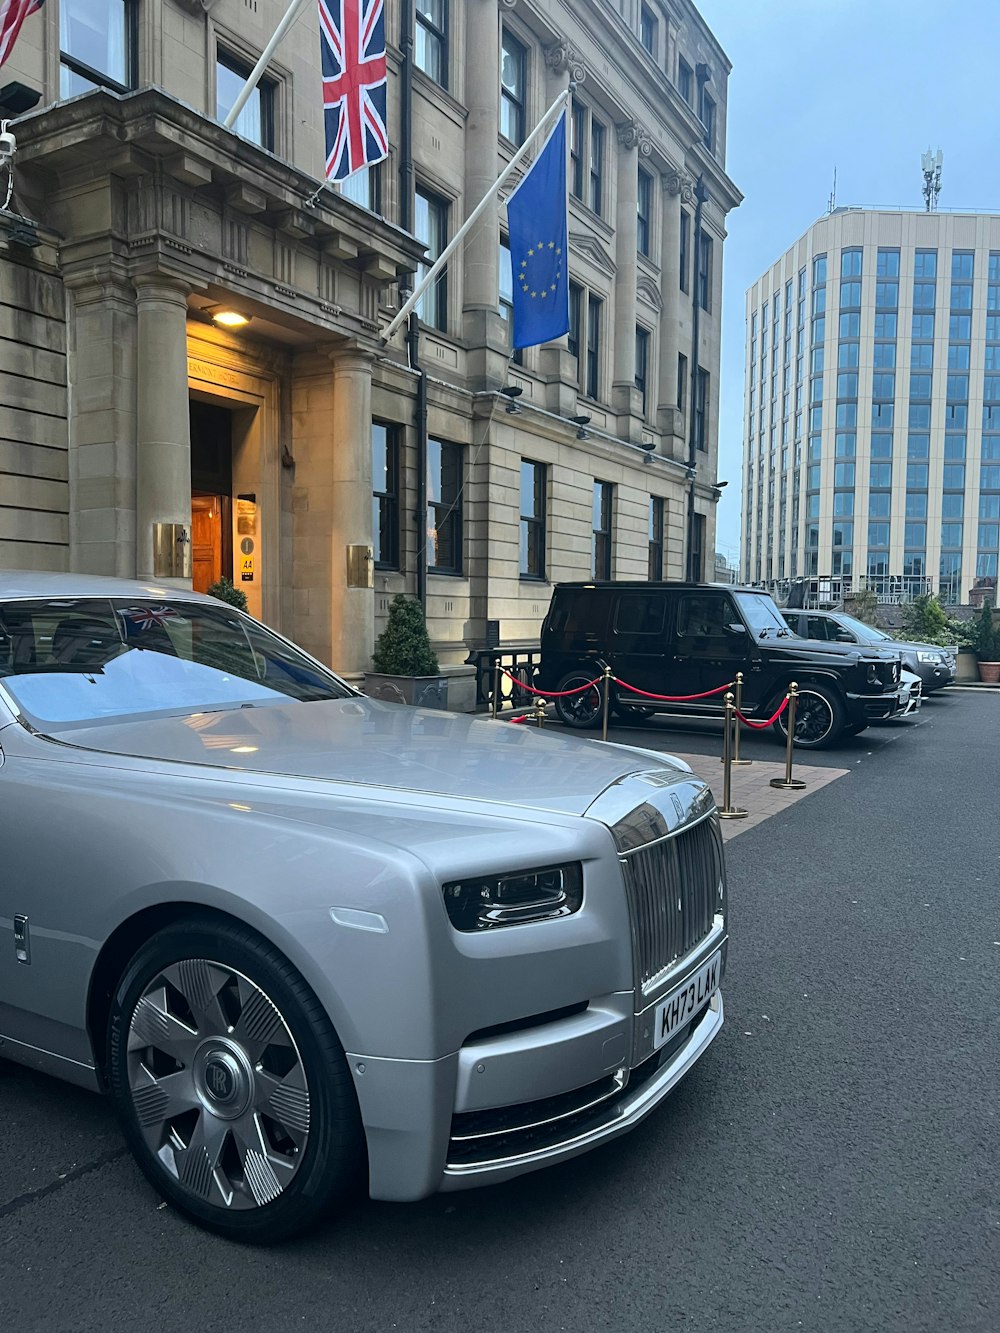 Une Rolls Royce argentée garée devant un immeuble